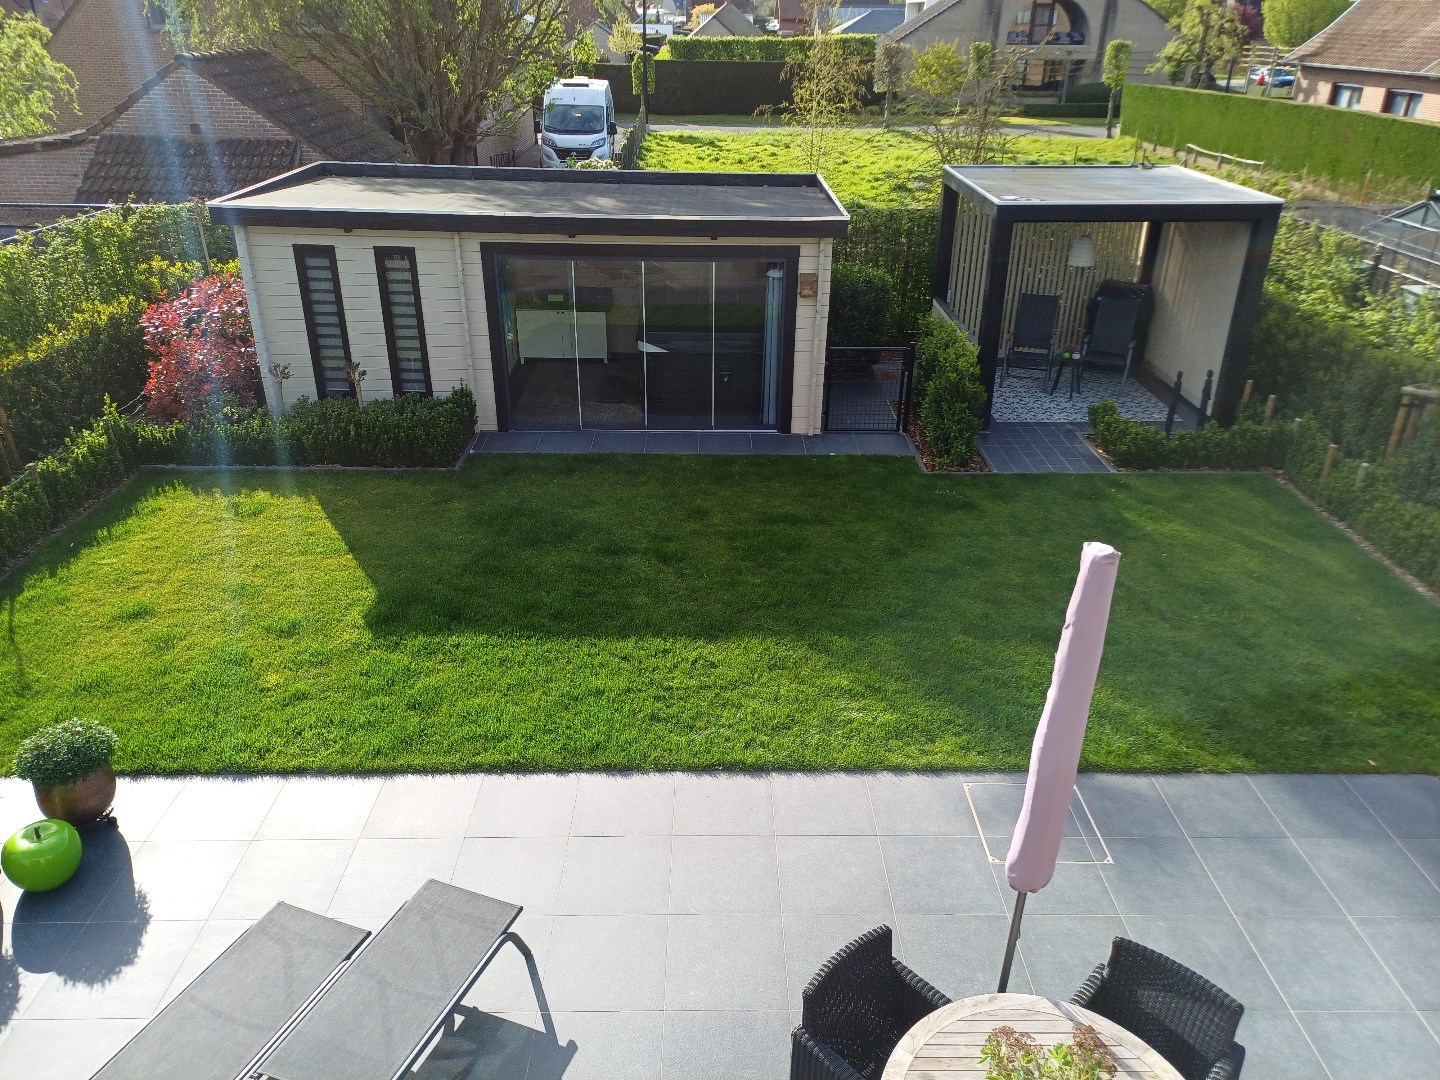 Nieuwe, super energiezuinige villa met vijf slaapkamers en zonnige tuin in doodlopende straat te Maldegem.  foto 28